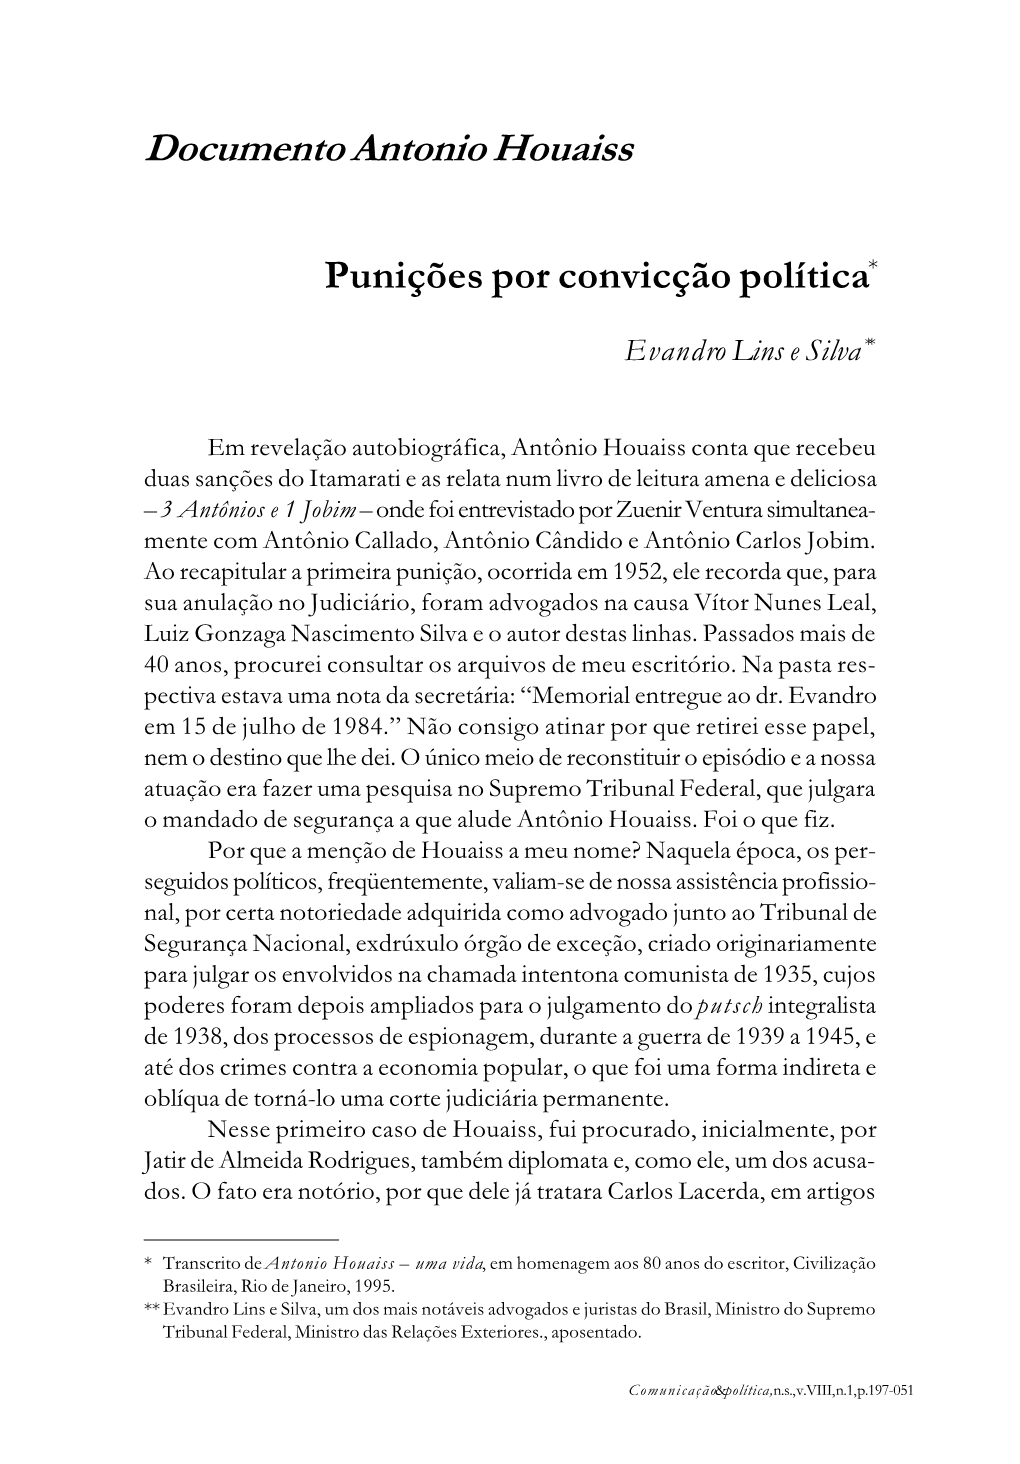 Punições Por Convicção Política* Documento Antonio Houaiss